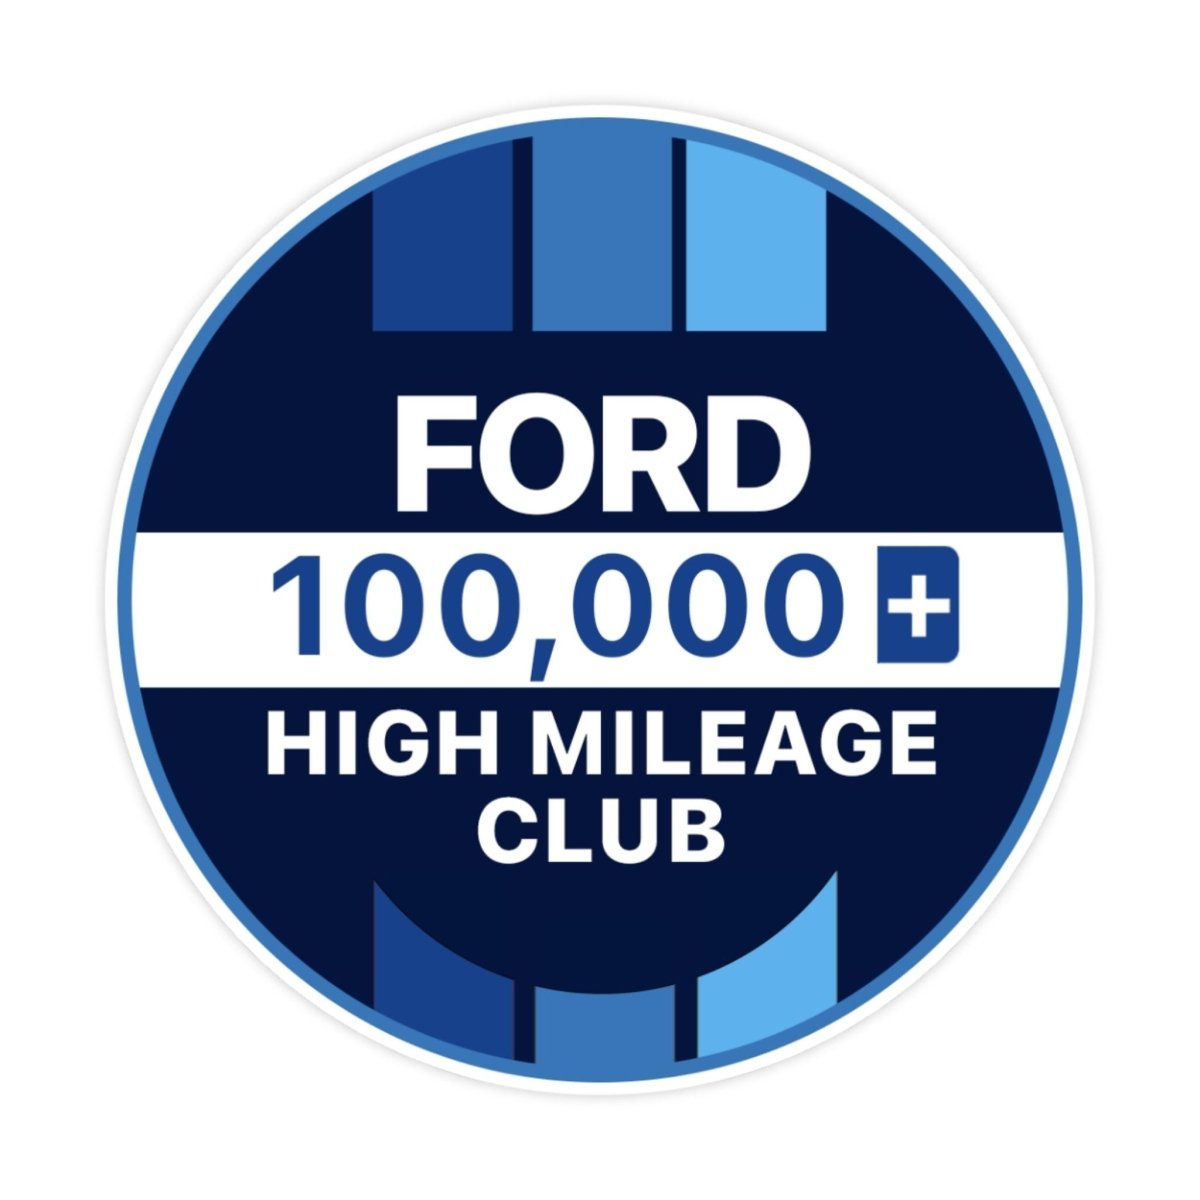 Ford 400k High Mileage Club Sticker - stickerbullFord 400k High Mileage Club StickerRetail StickerstickerbullstickerbullTaylor_Ford100k [#118]100kFord 400k High Mileage Club Sticker